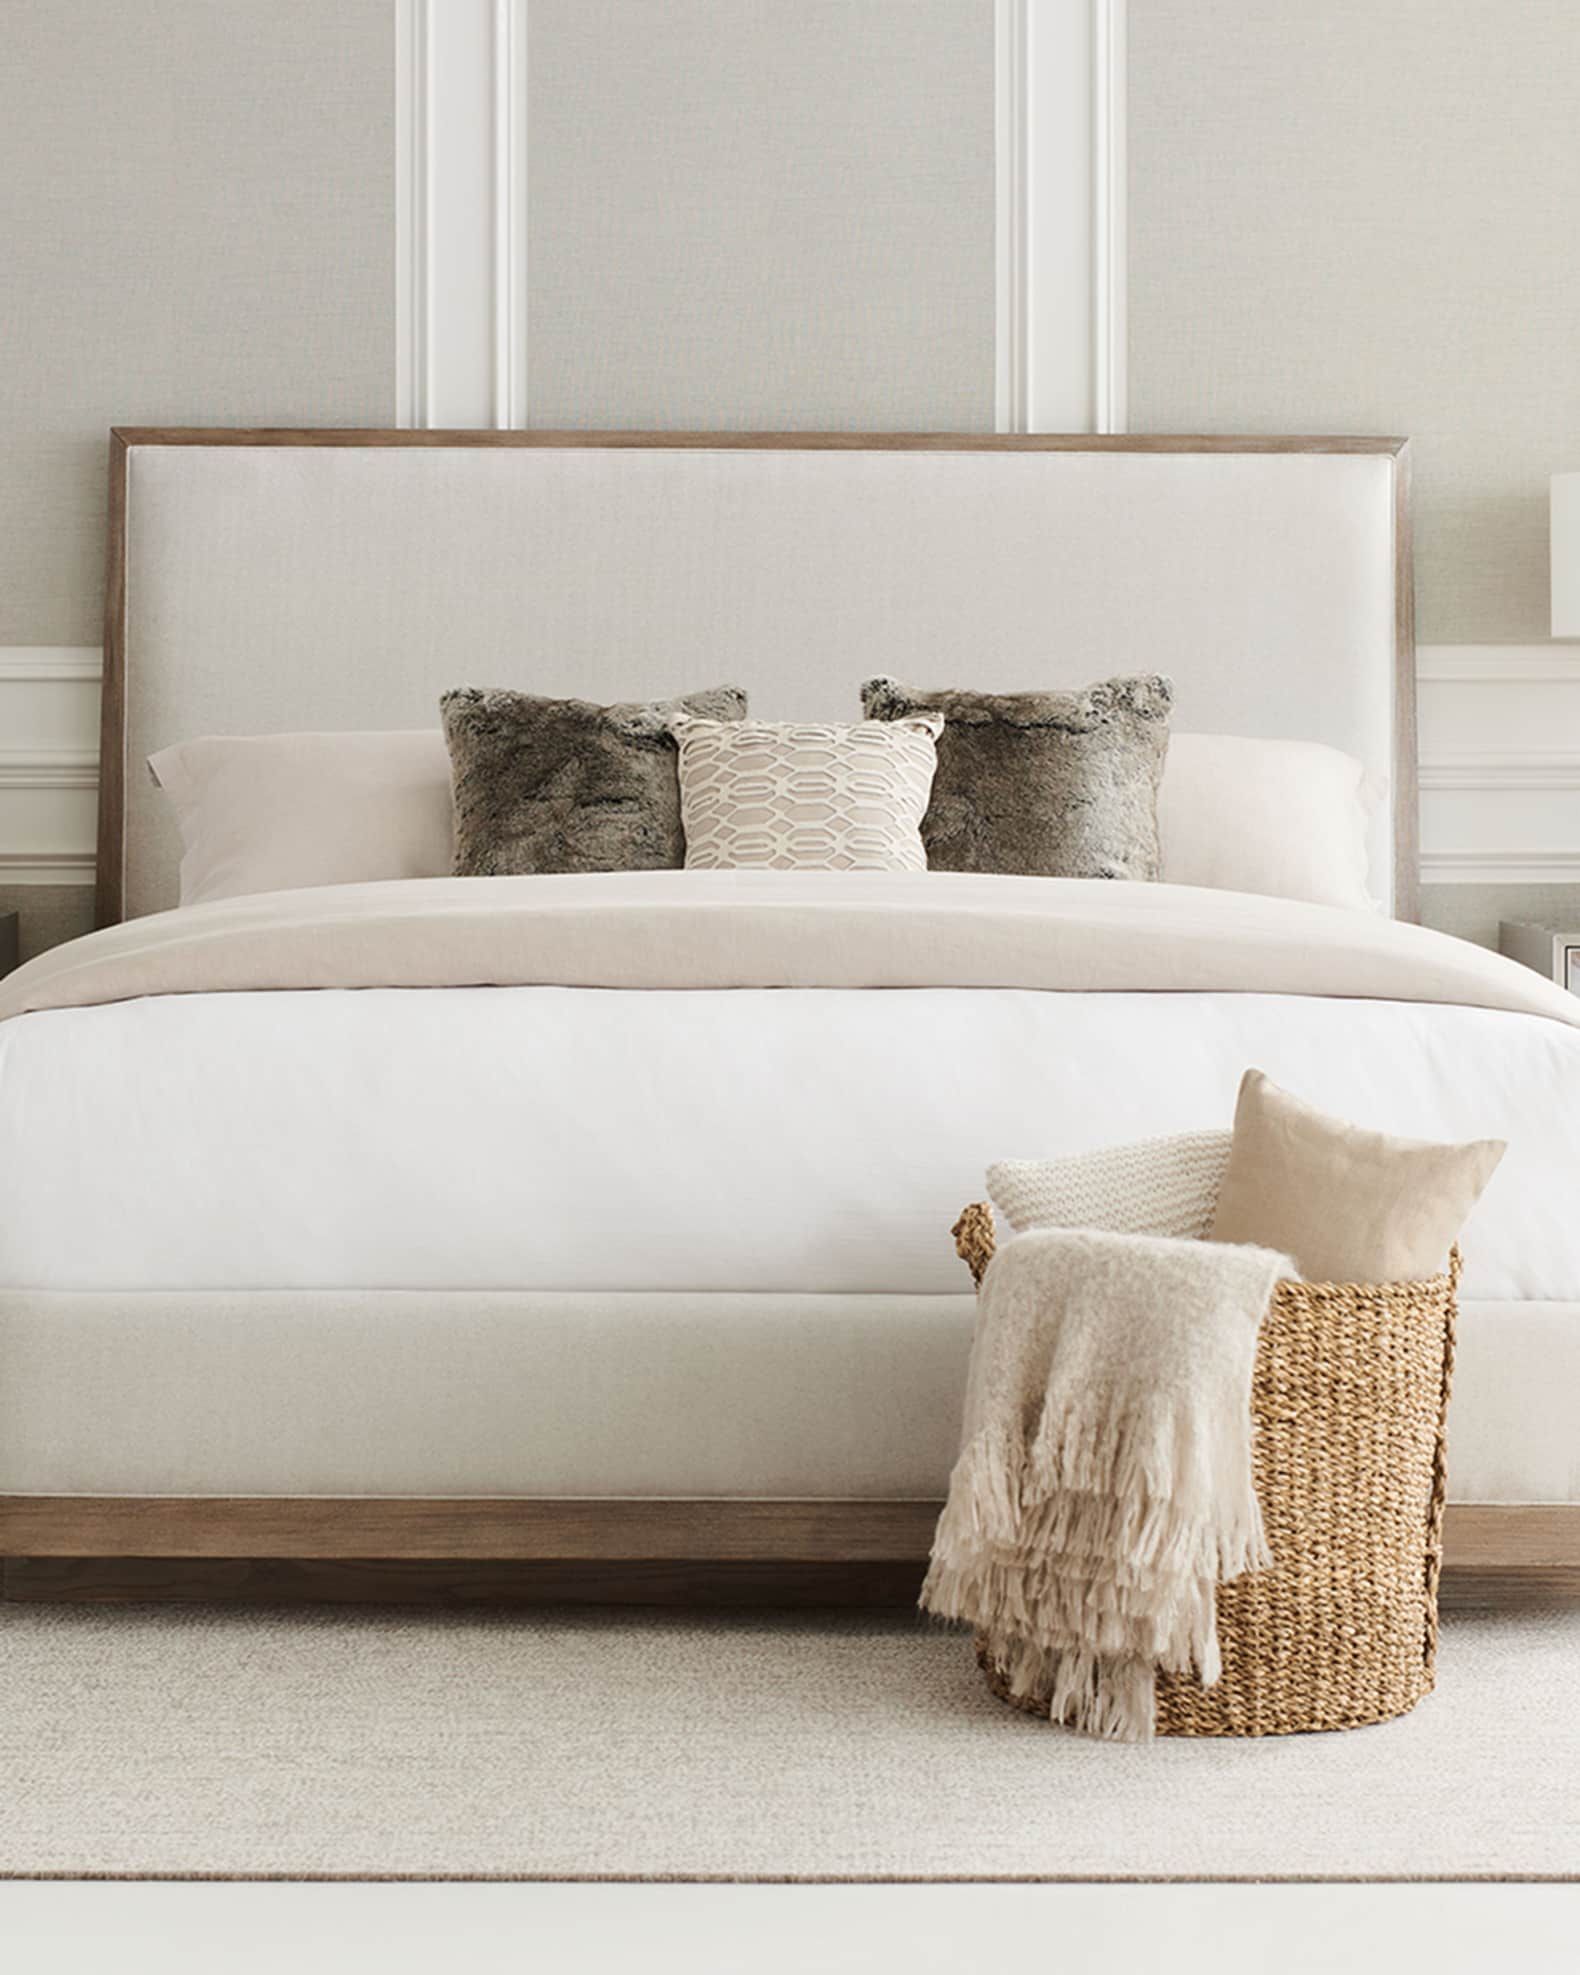 Make your bedroom look beautiful with
  queen bedroom sets